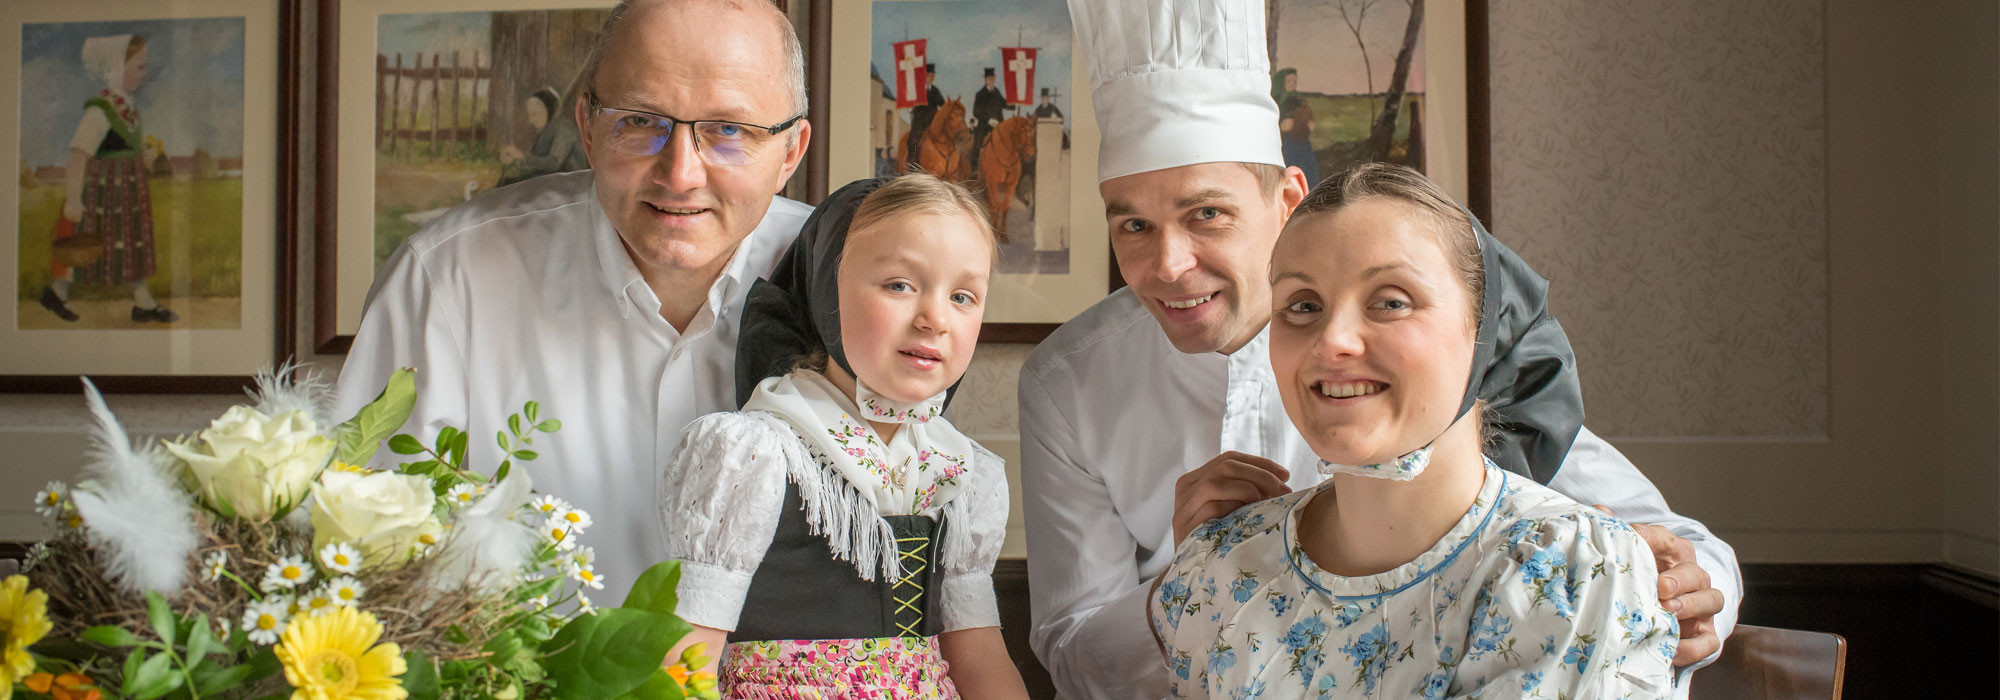 Das Wjelbik ist ein Familienunternehmen: Küchenchef Thomas Lukasch (2.v.r.) mit Ehefrau Monika Lukasch und Tochter Matilda, Großvater Stefan Mahling, betreibt das Hotel Dom Eck.